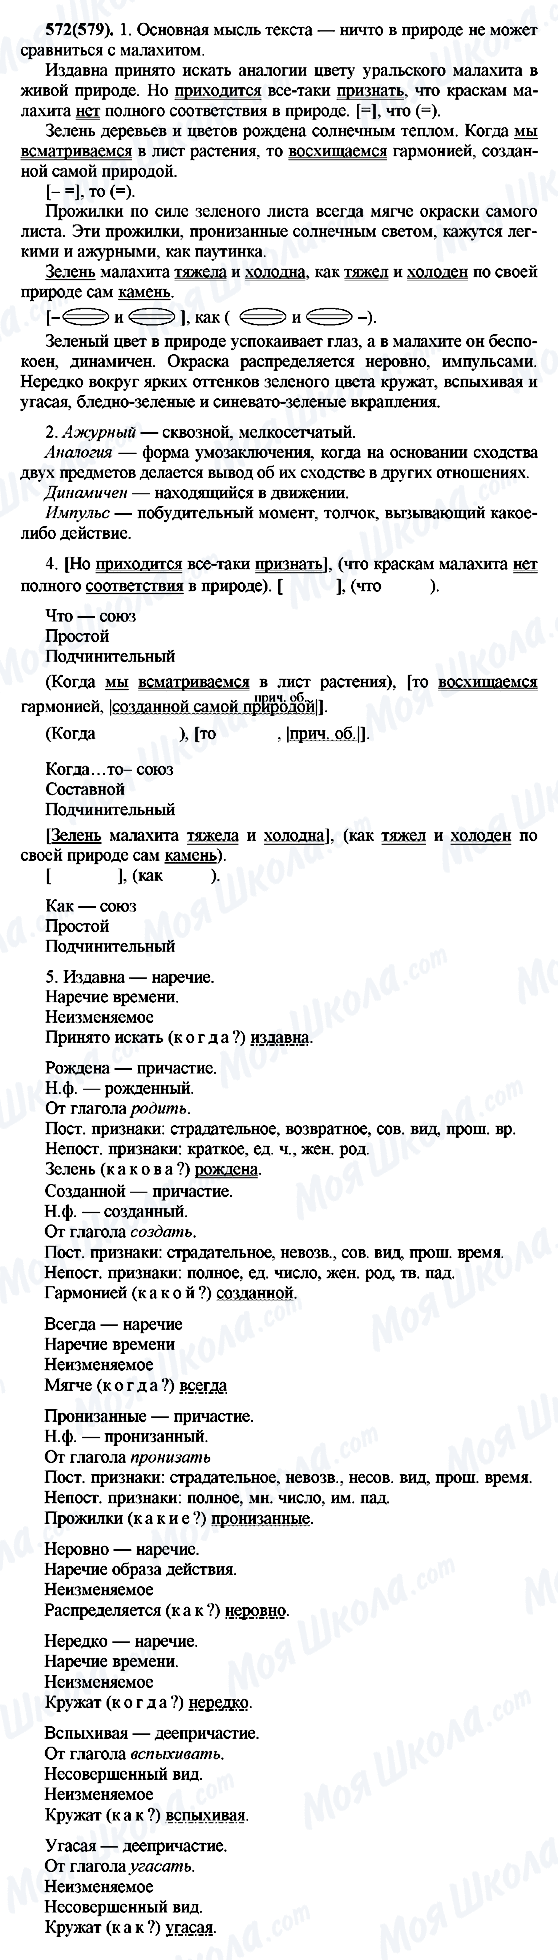 ГДЗ Русский язык 7 класс страница 572(579)